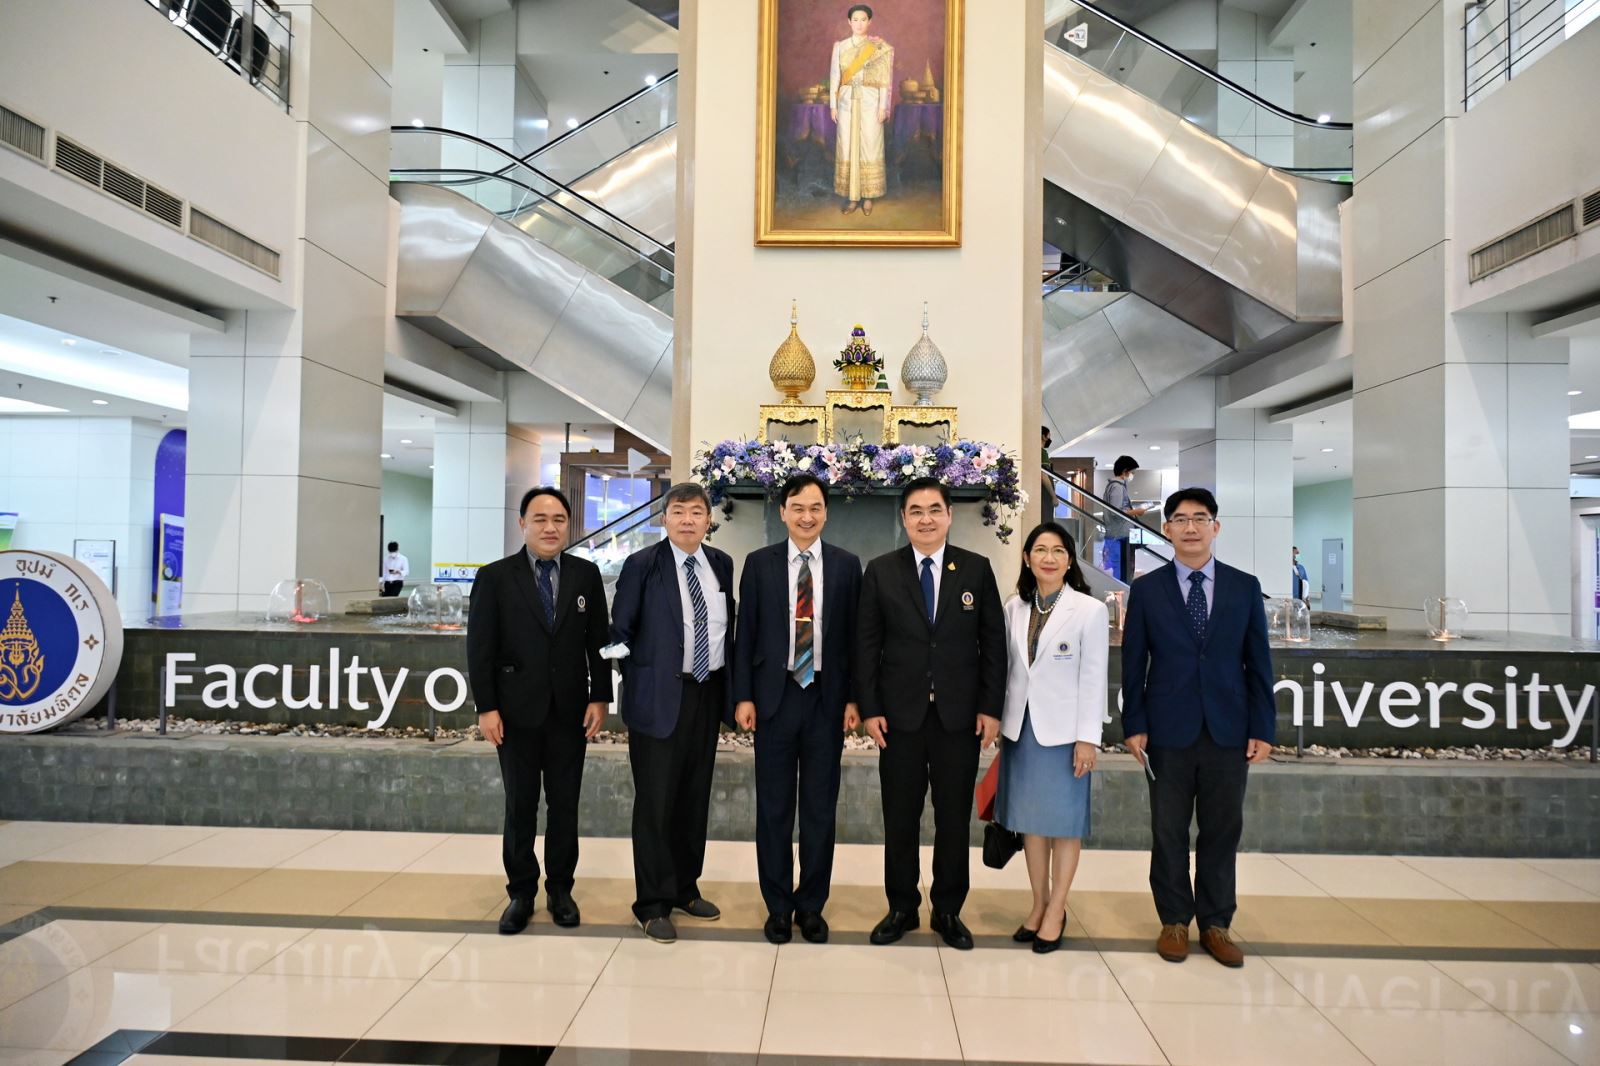 圖二、蘇芳慶副校長(左三)率領團隊成員於2022年7月拜訪泰國瑪希敦大學牙科學院院長Dr. Sirichai Kiattavorncharoen(右三) (蘇芳慶副校長提供)